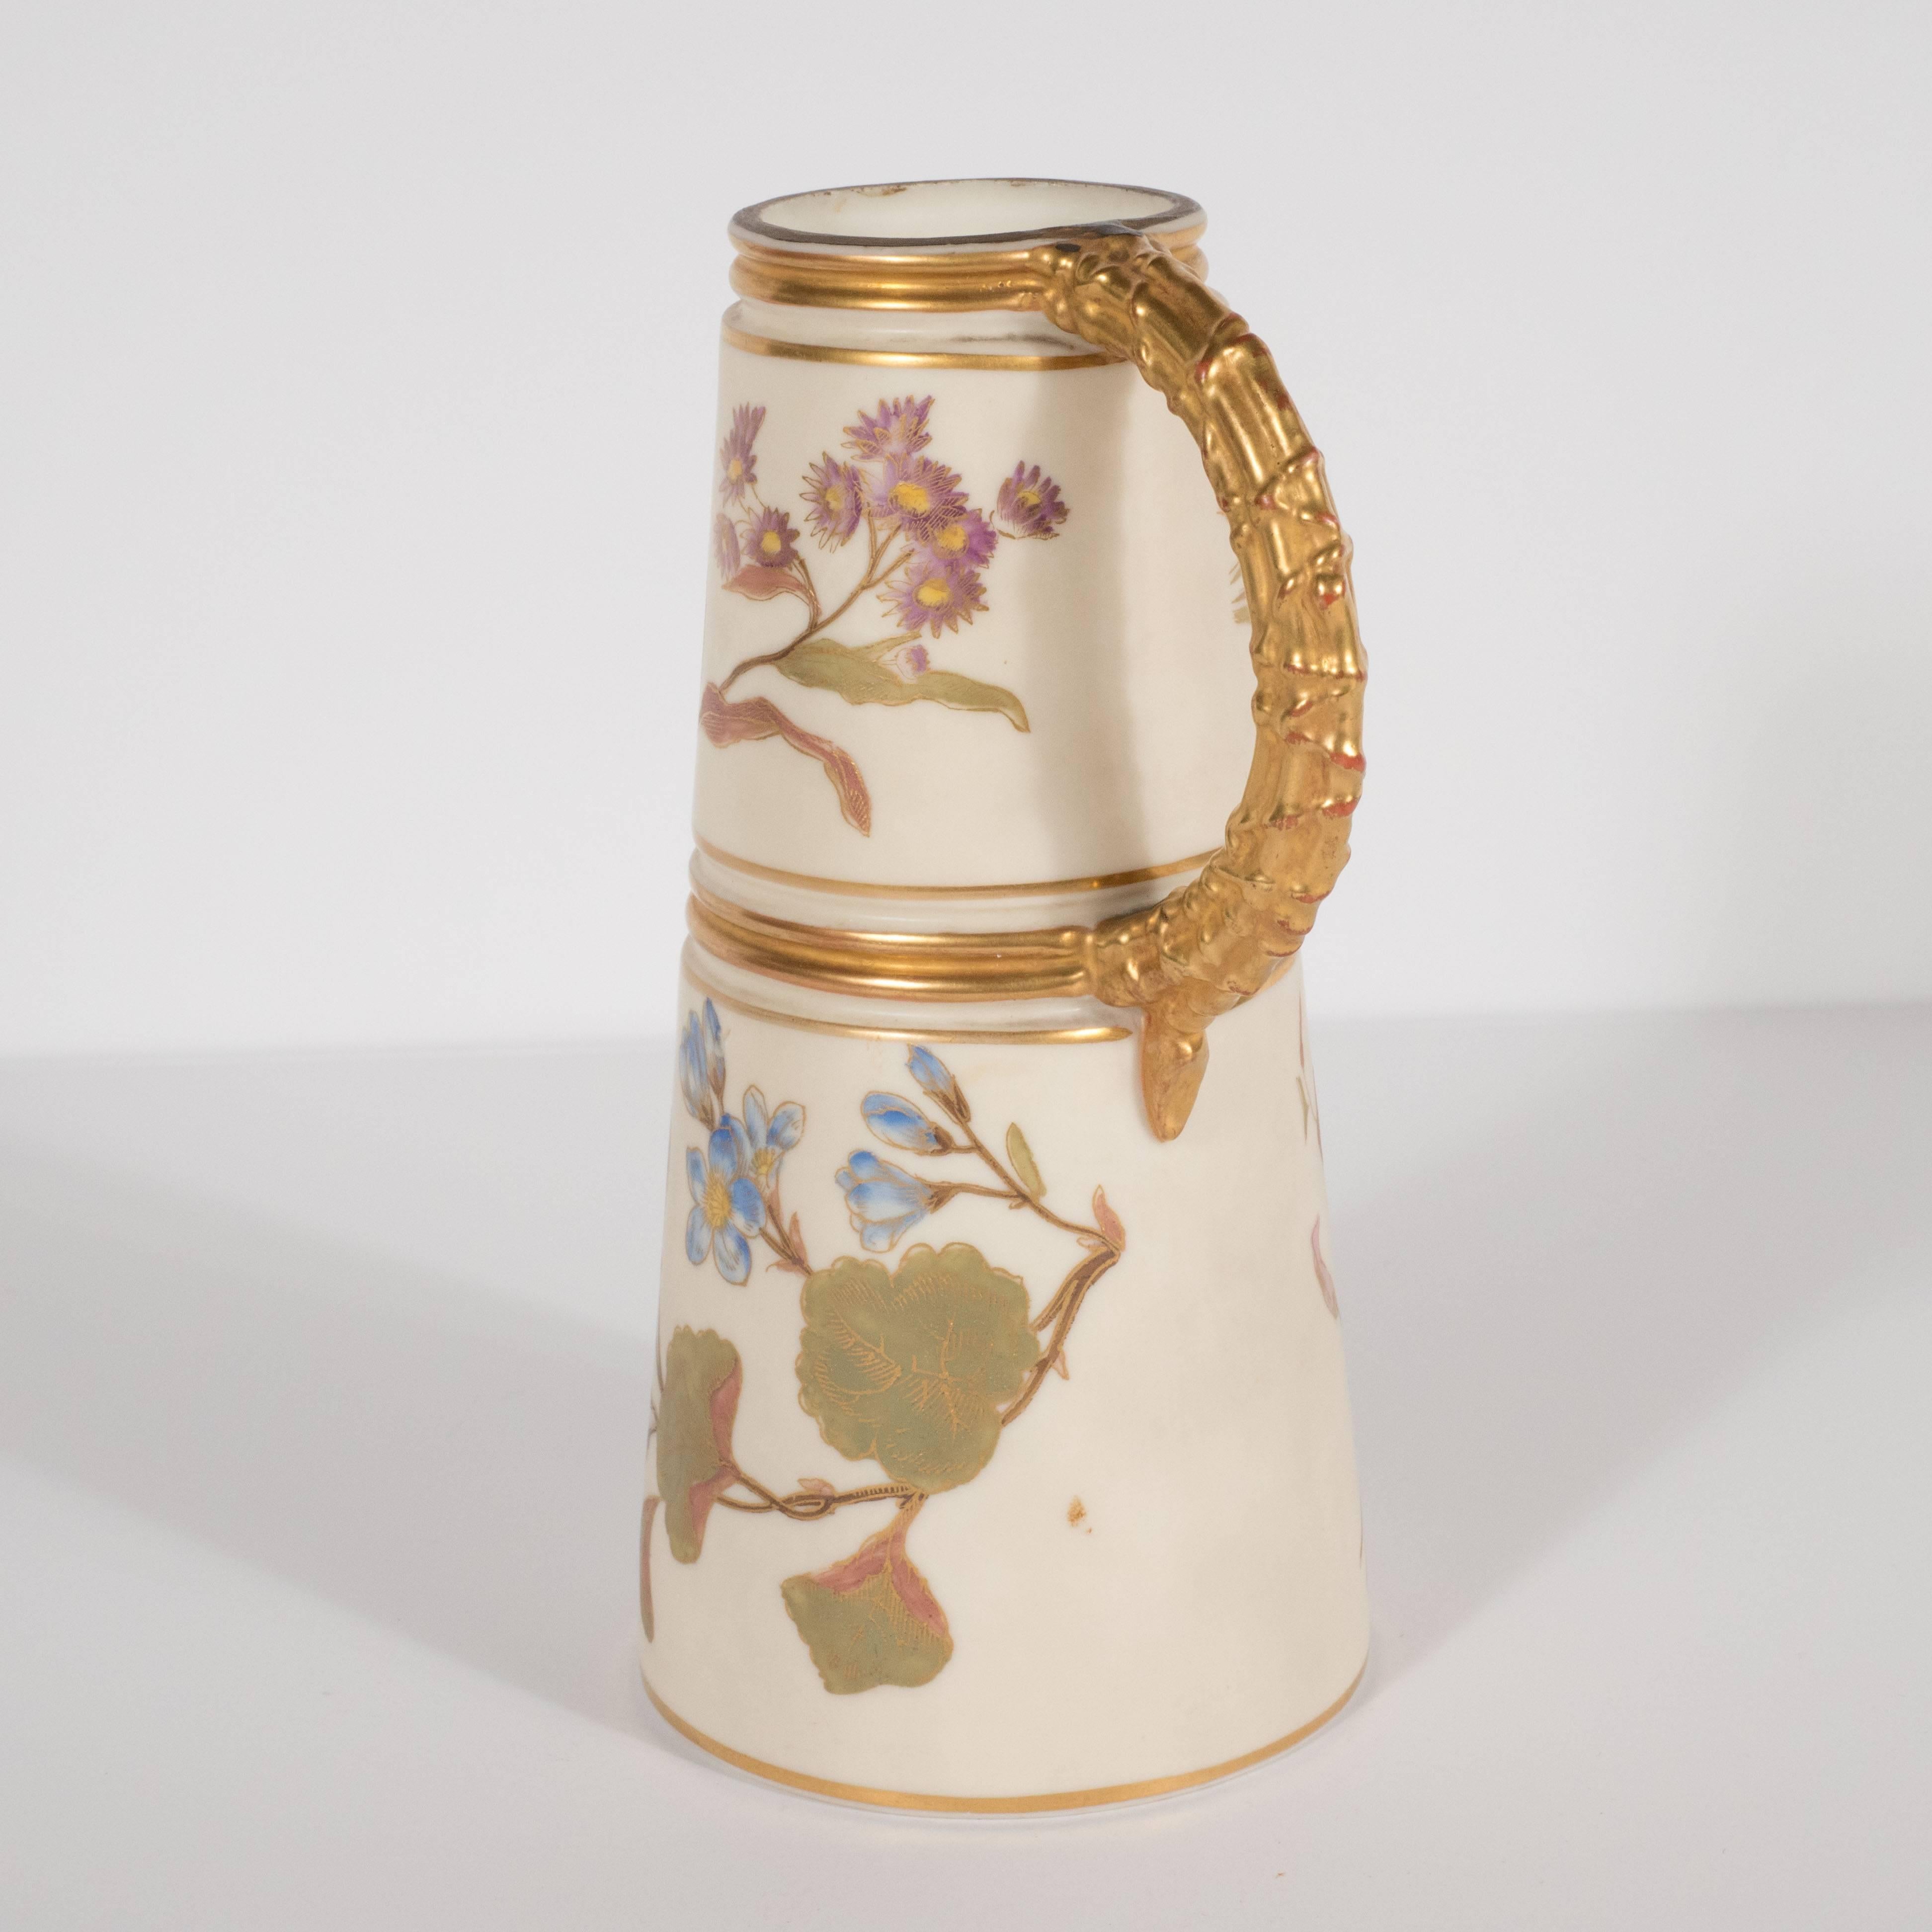 Ce magnifique vase Art Nouveau a été créé à l'apogée de l'Art Nouveau par Royal Worcester, le plus ancien et le plus illustre producteur de porcelaine d'Angleterre. Il est composé d'une forme cylindrique effilée en porcelaine d'os avec une abondance